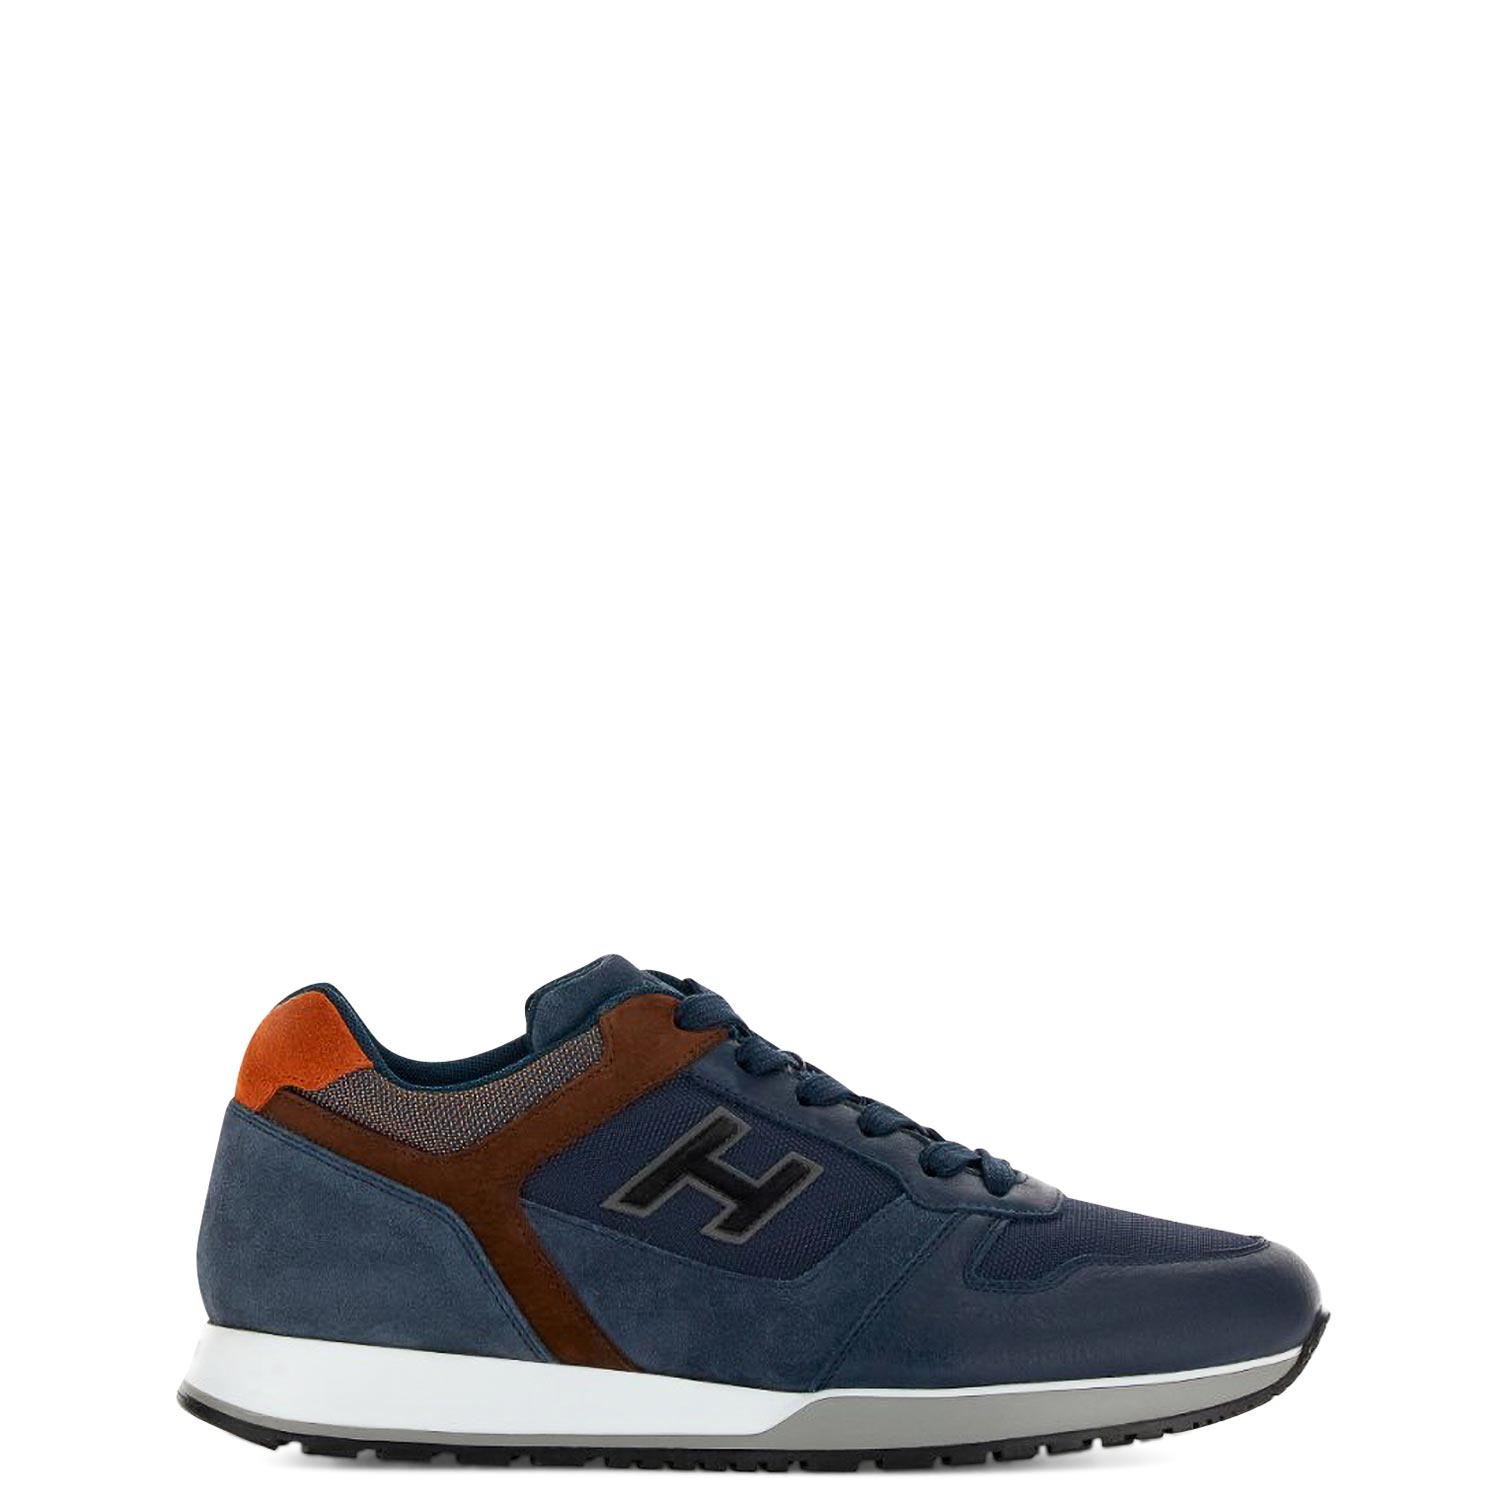 Υποδήματα - Sneakers Sneakers ανδρικά Hogan Μπλε H321 ALLACCIATO H FLOCK